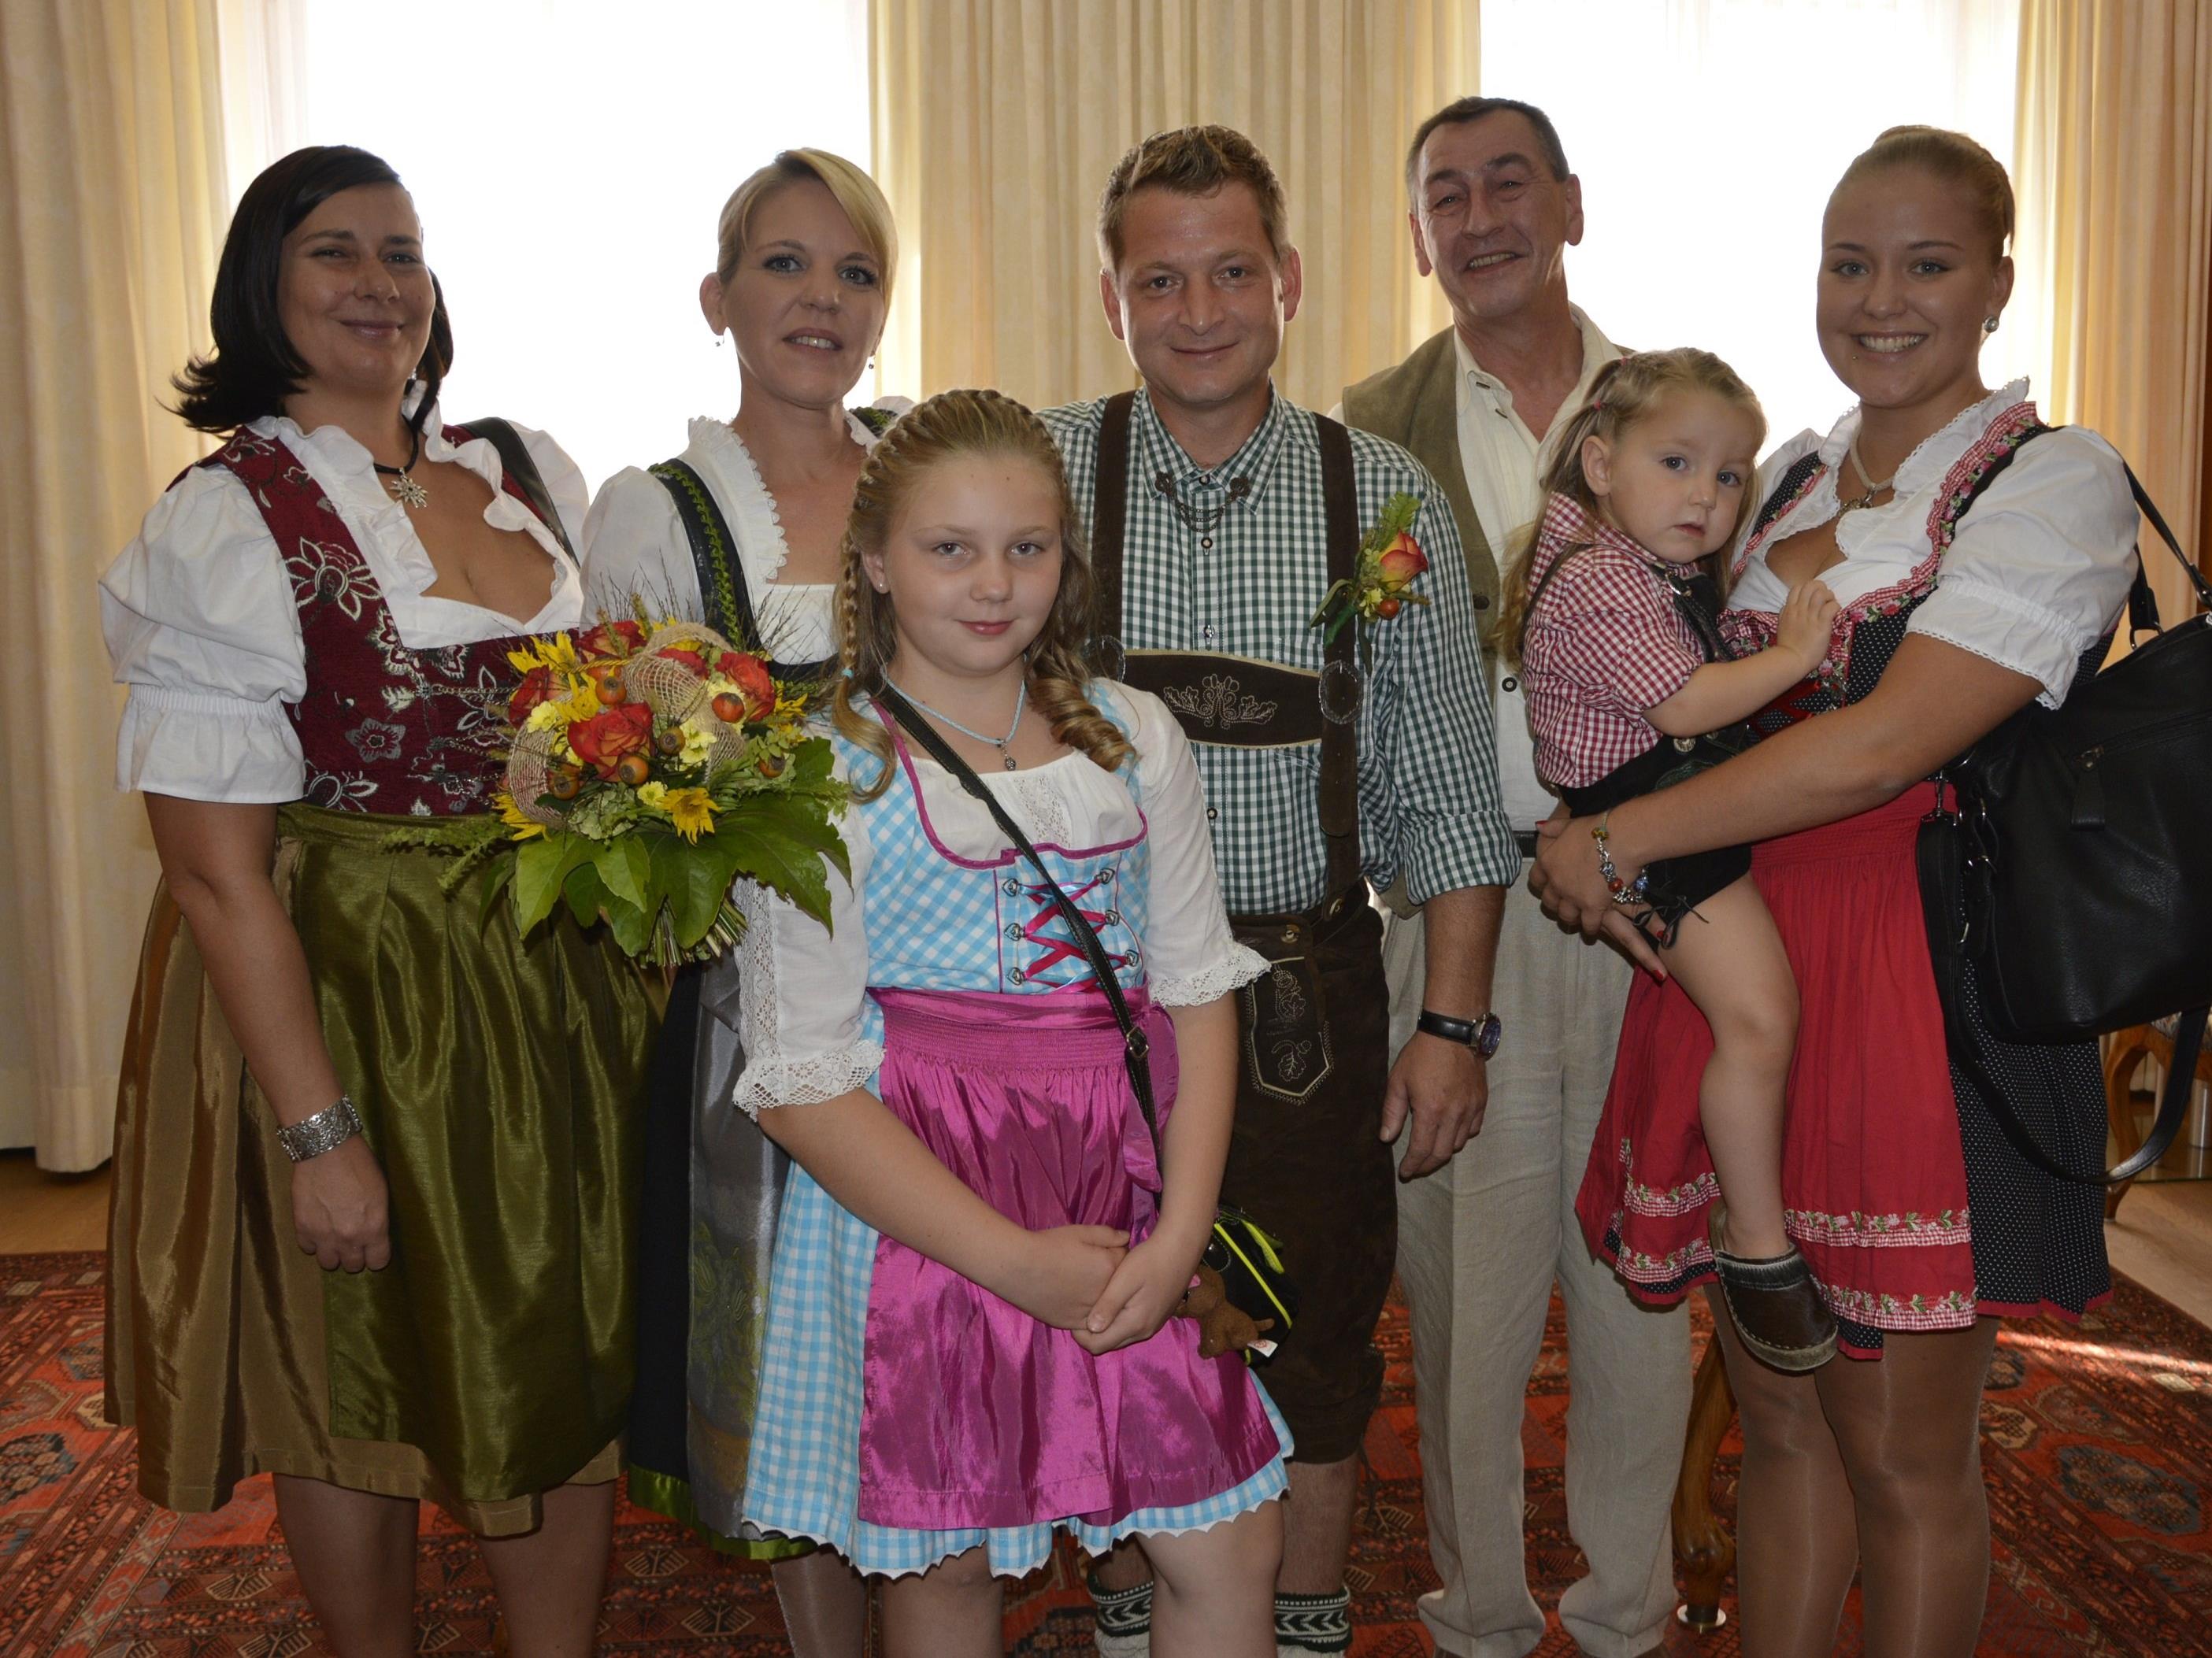 Das Brautpaar mit den Kindern und Trauzeugen bei der standesamtlichen Trauung in Dornbirn.